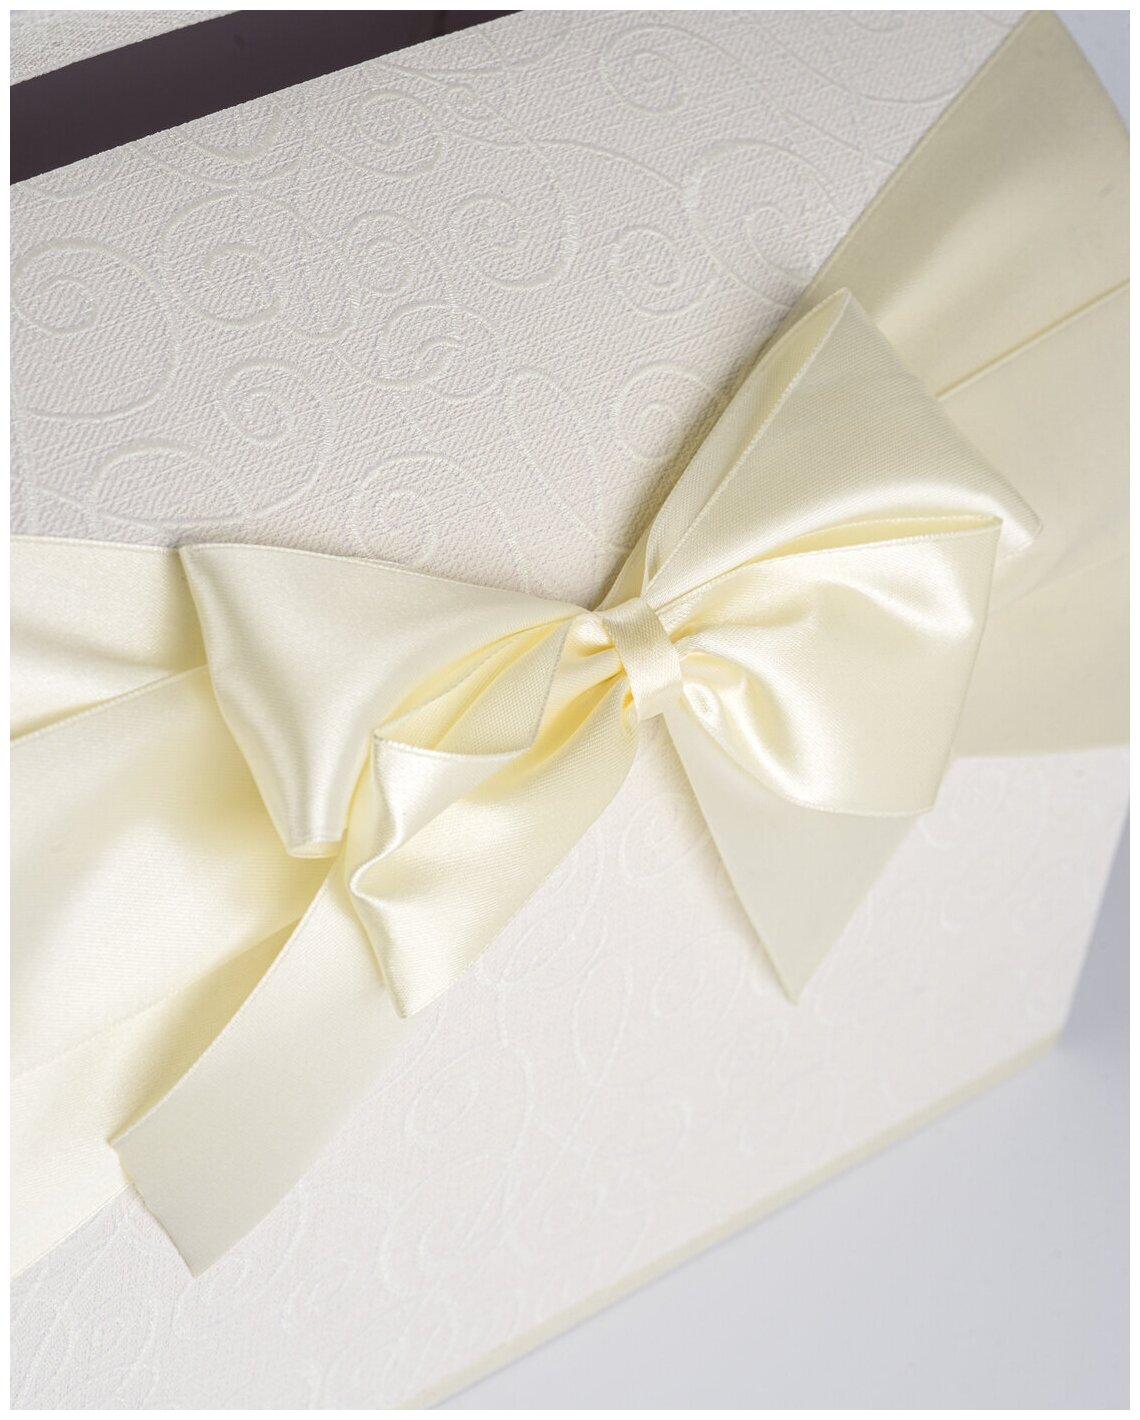 Семейная казна на свадьбу - сундучок для денежных подарков и открыток молодоженов с атласным бантом айвори и фактурными узорами молочного цвета